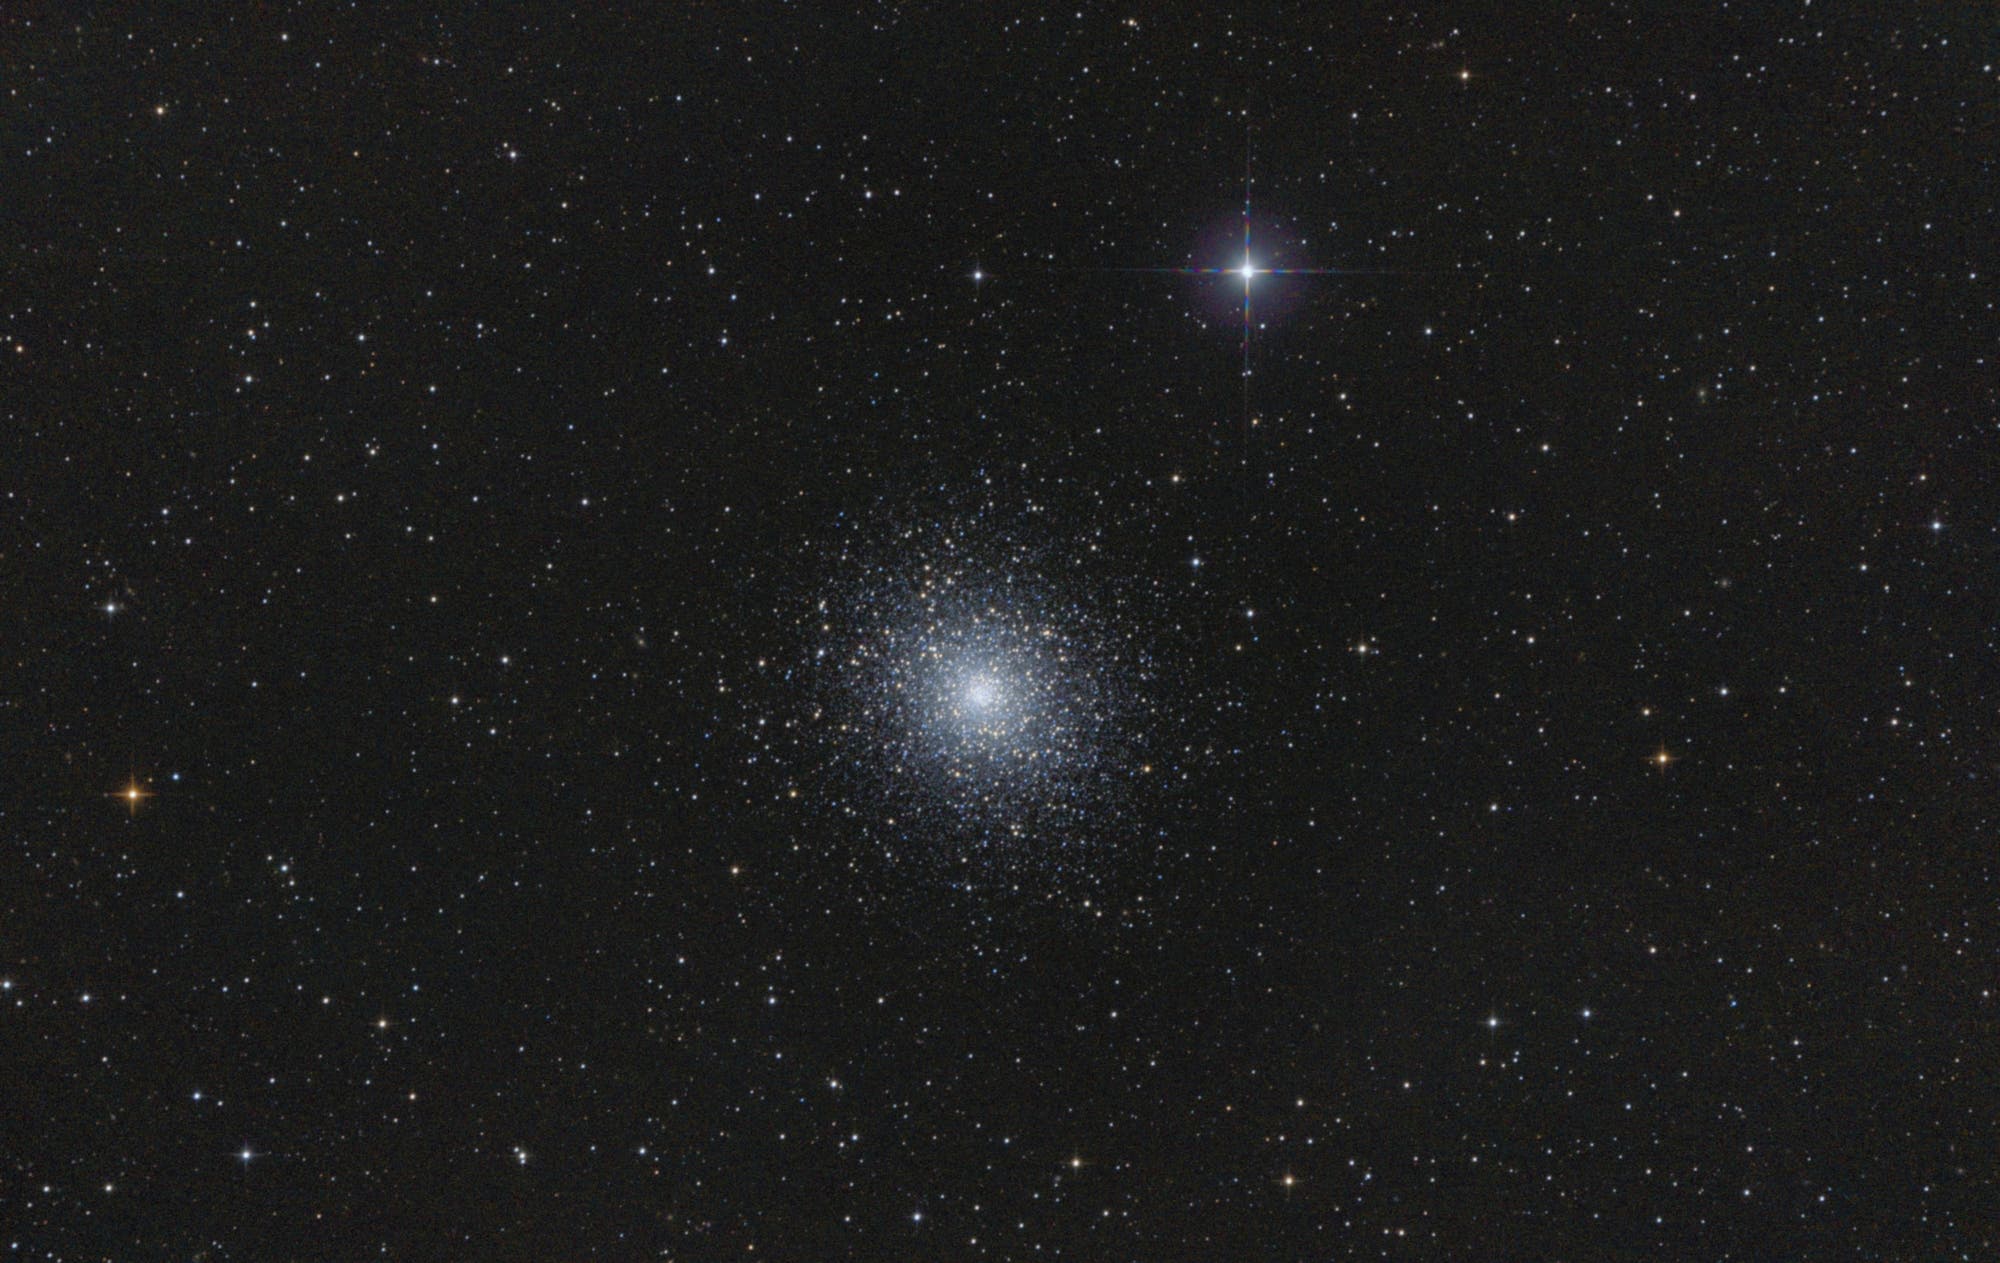 Messier 5 